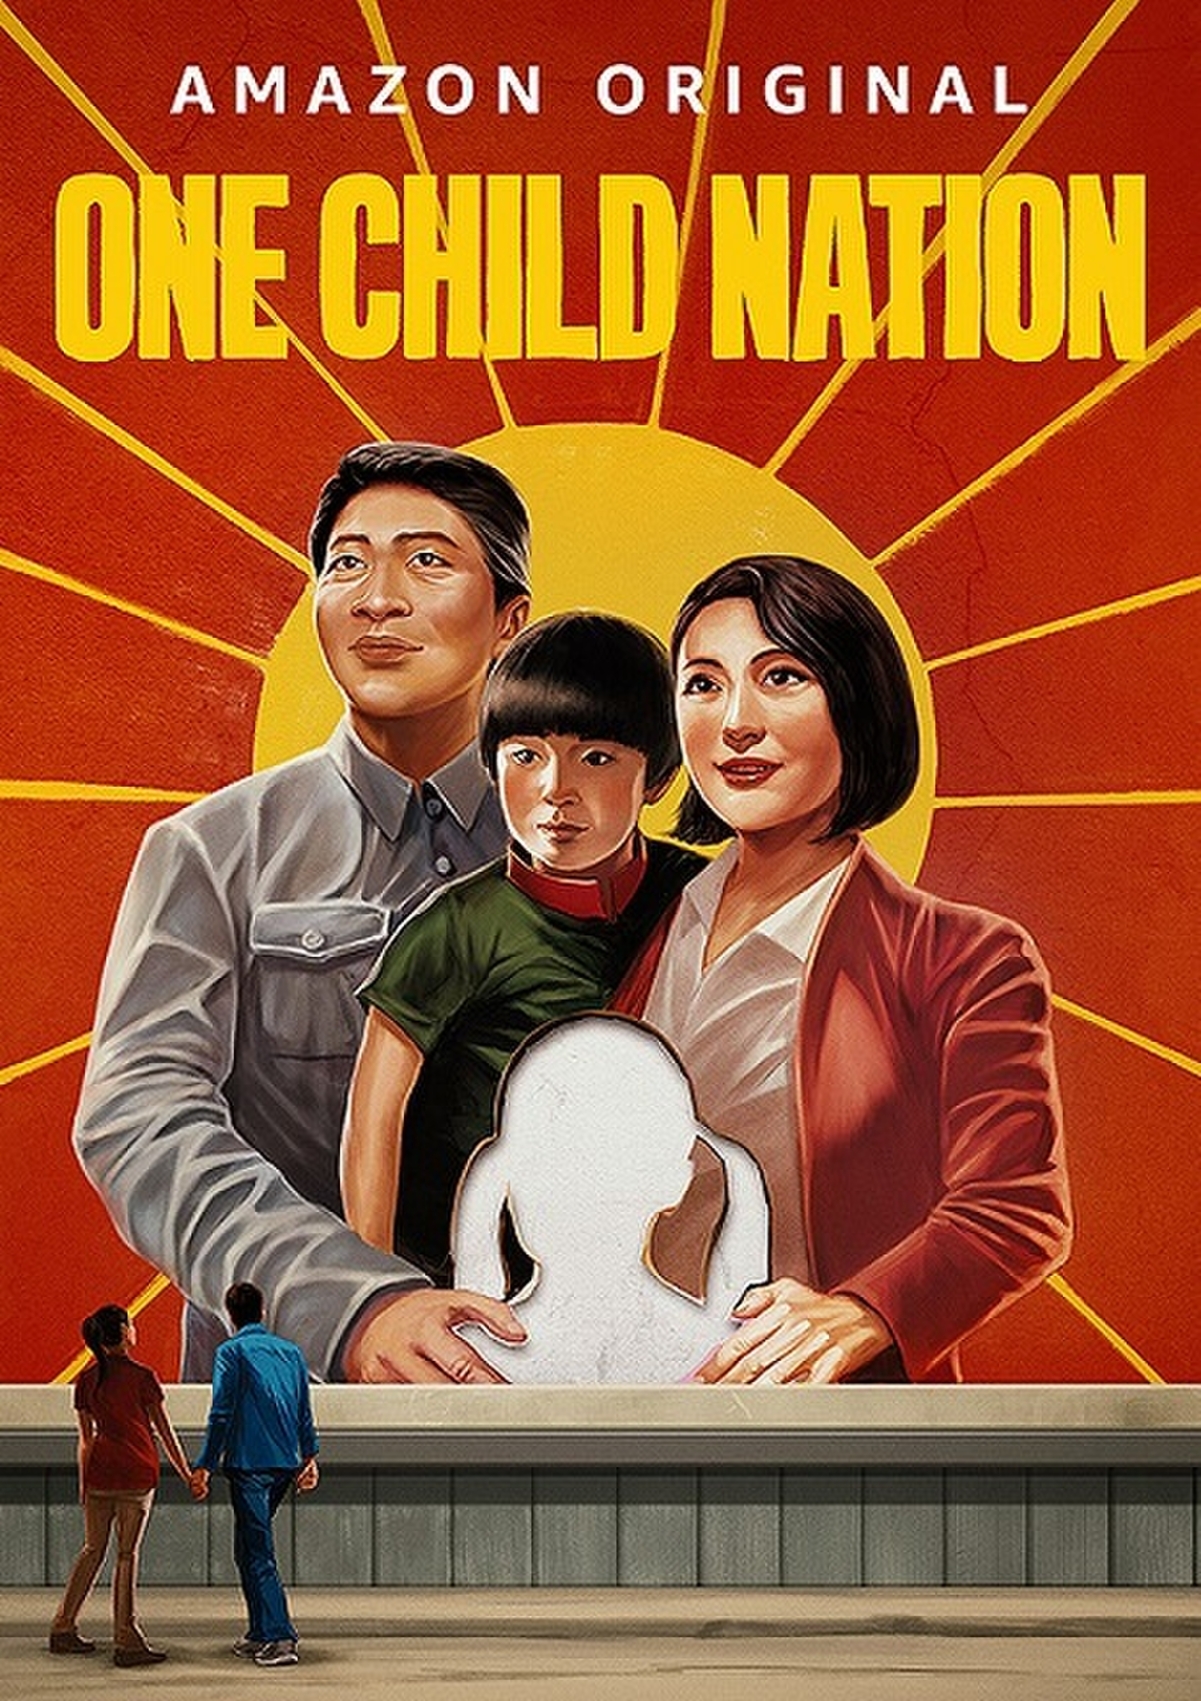 一人っ子政策がもたらした問題とは 一人っ子の国 監督が語る 中国上映ng の真実 映画ニュース 映画 Com